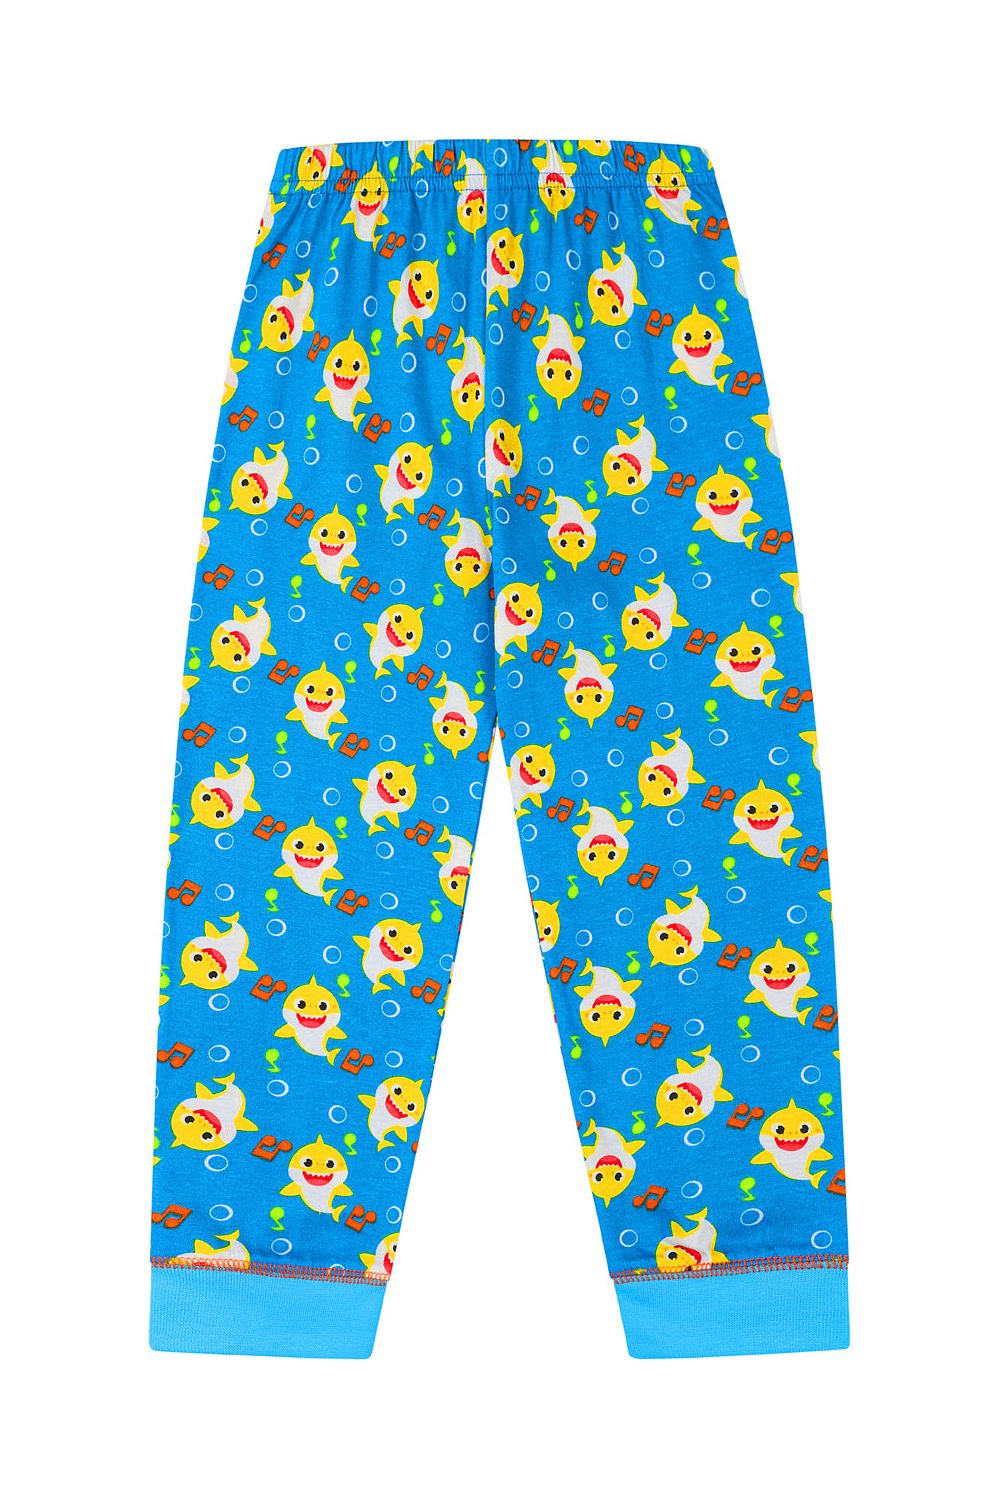 Pinkfong Baby Shark Song  Long Pyjamas - Pyjamas.com